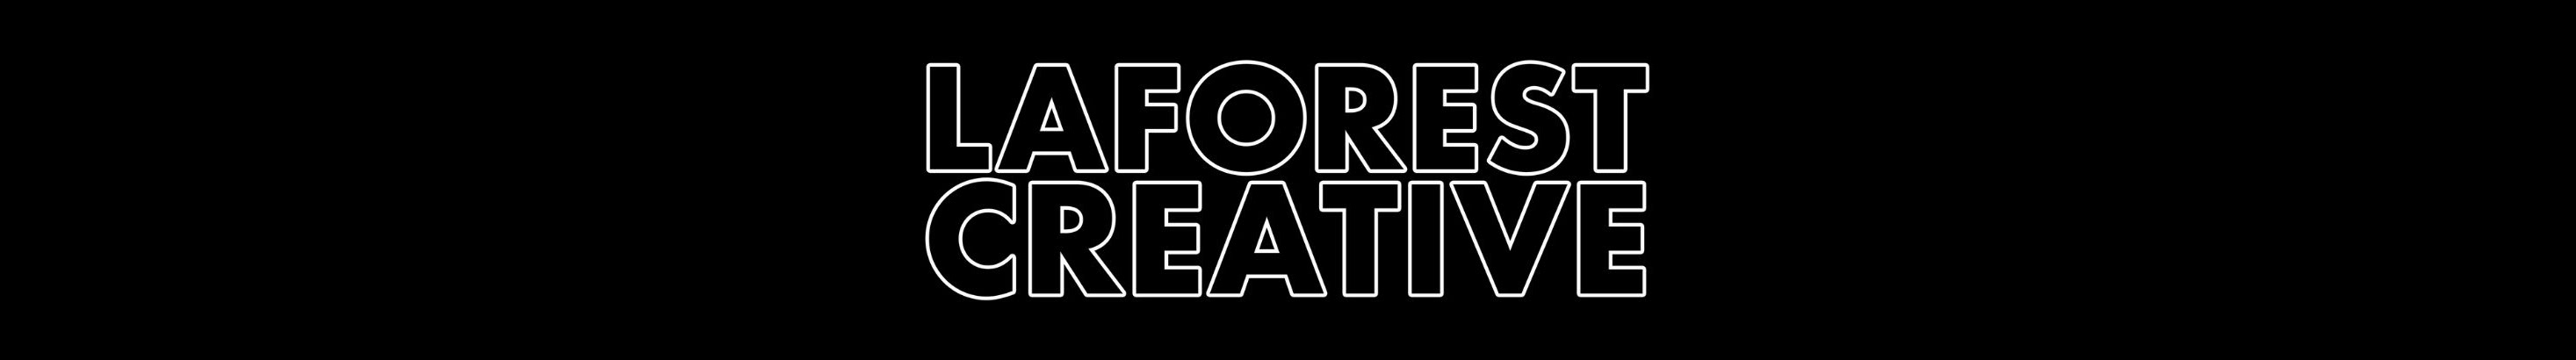 Laforest Creative's profile banner